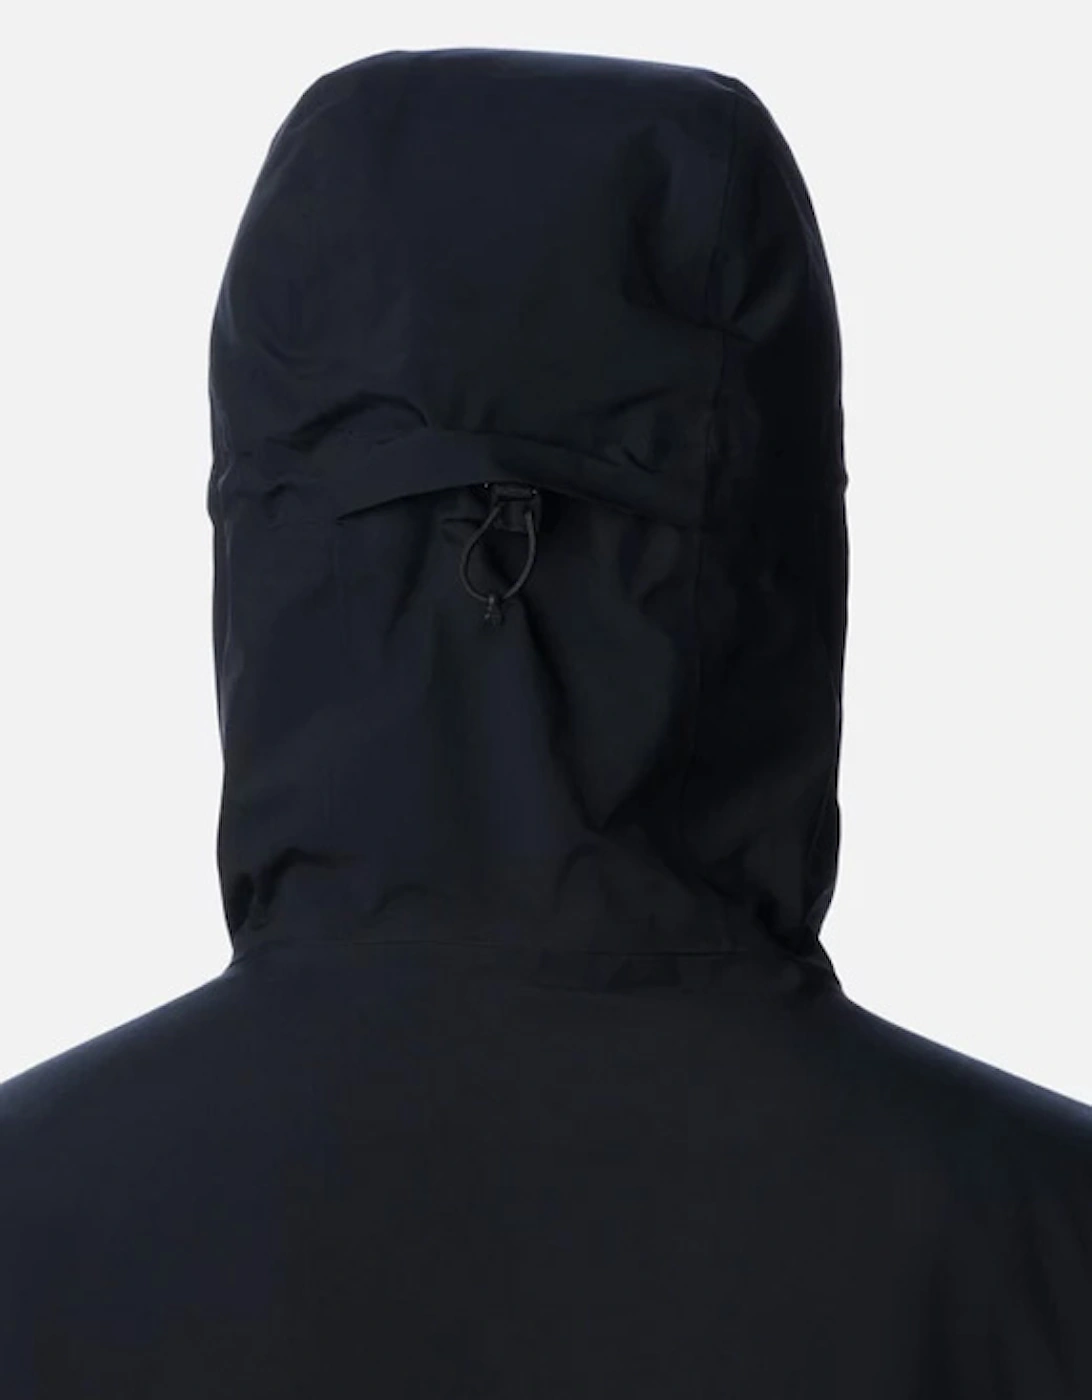 Men's Explorer's Edge™ Waterproof Insulated Jacket Black